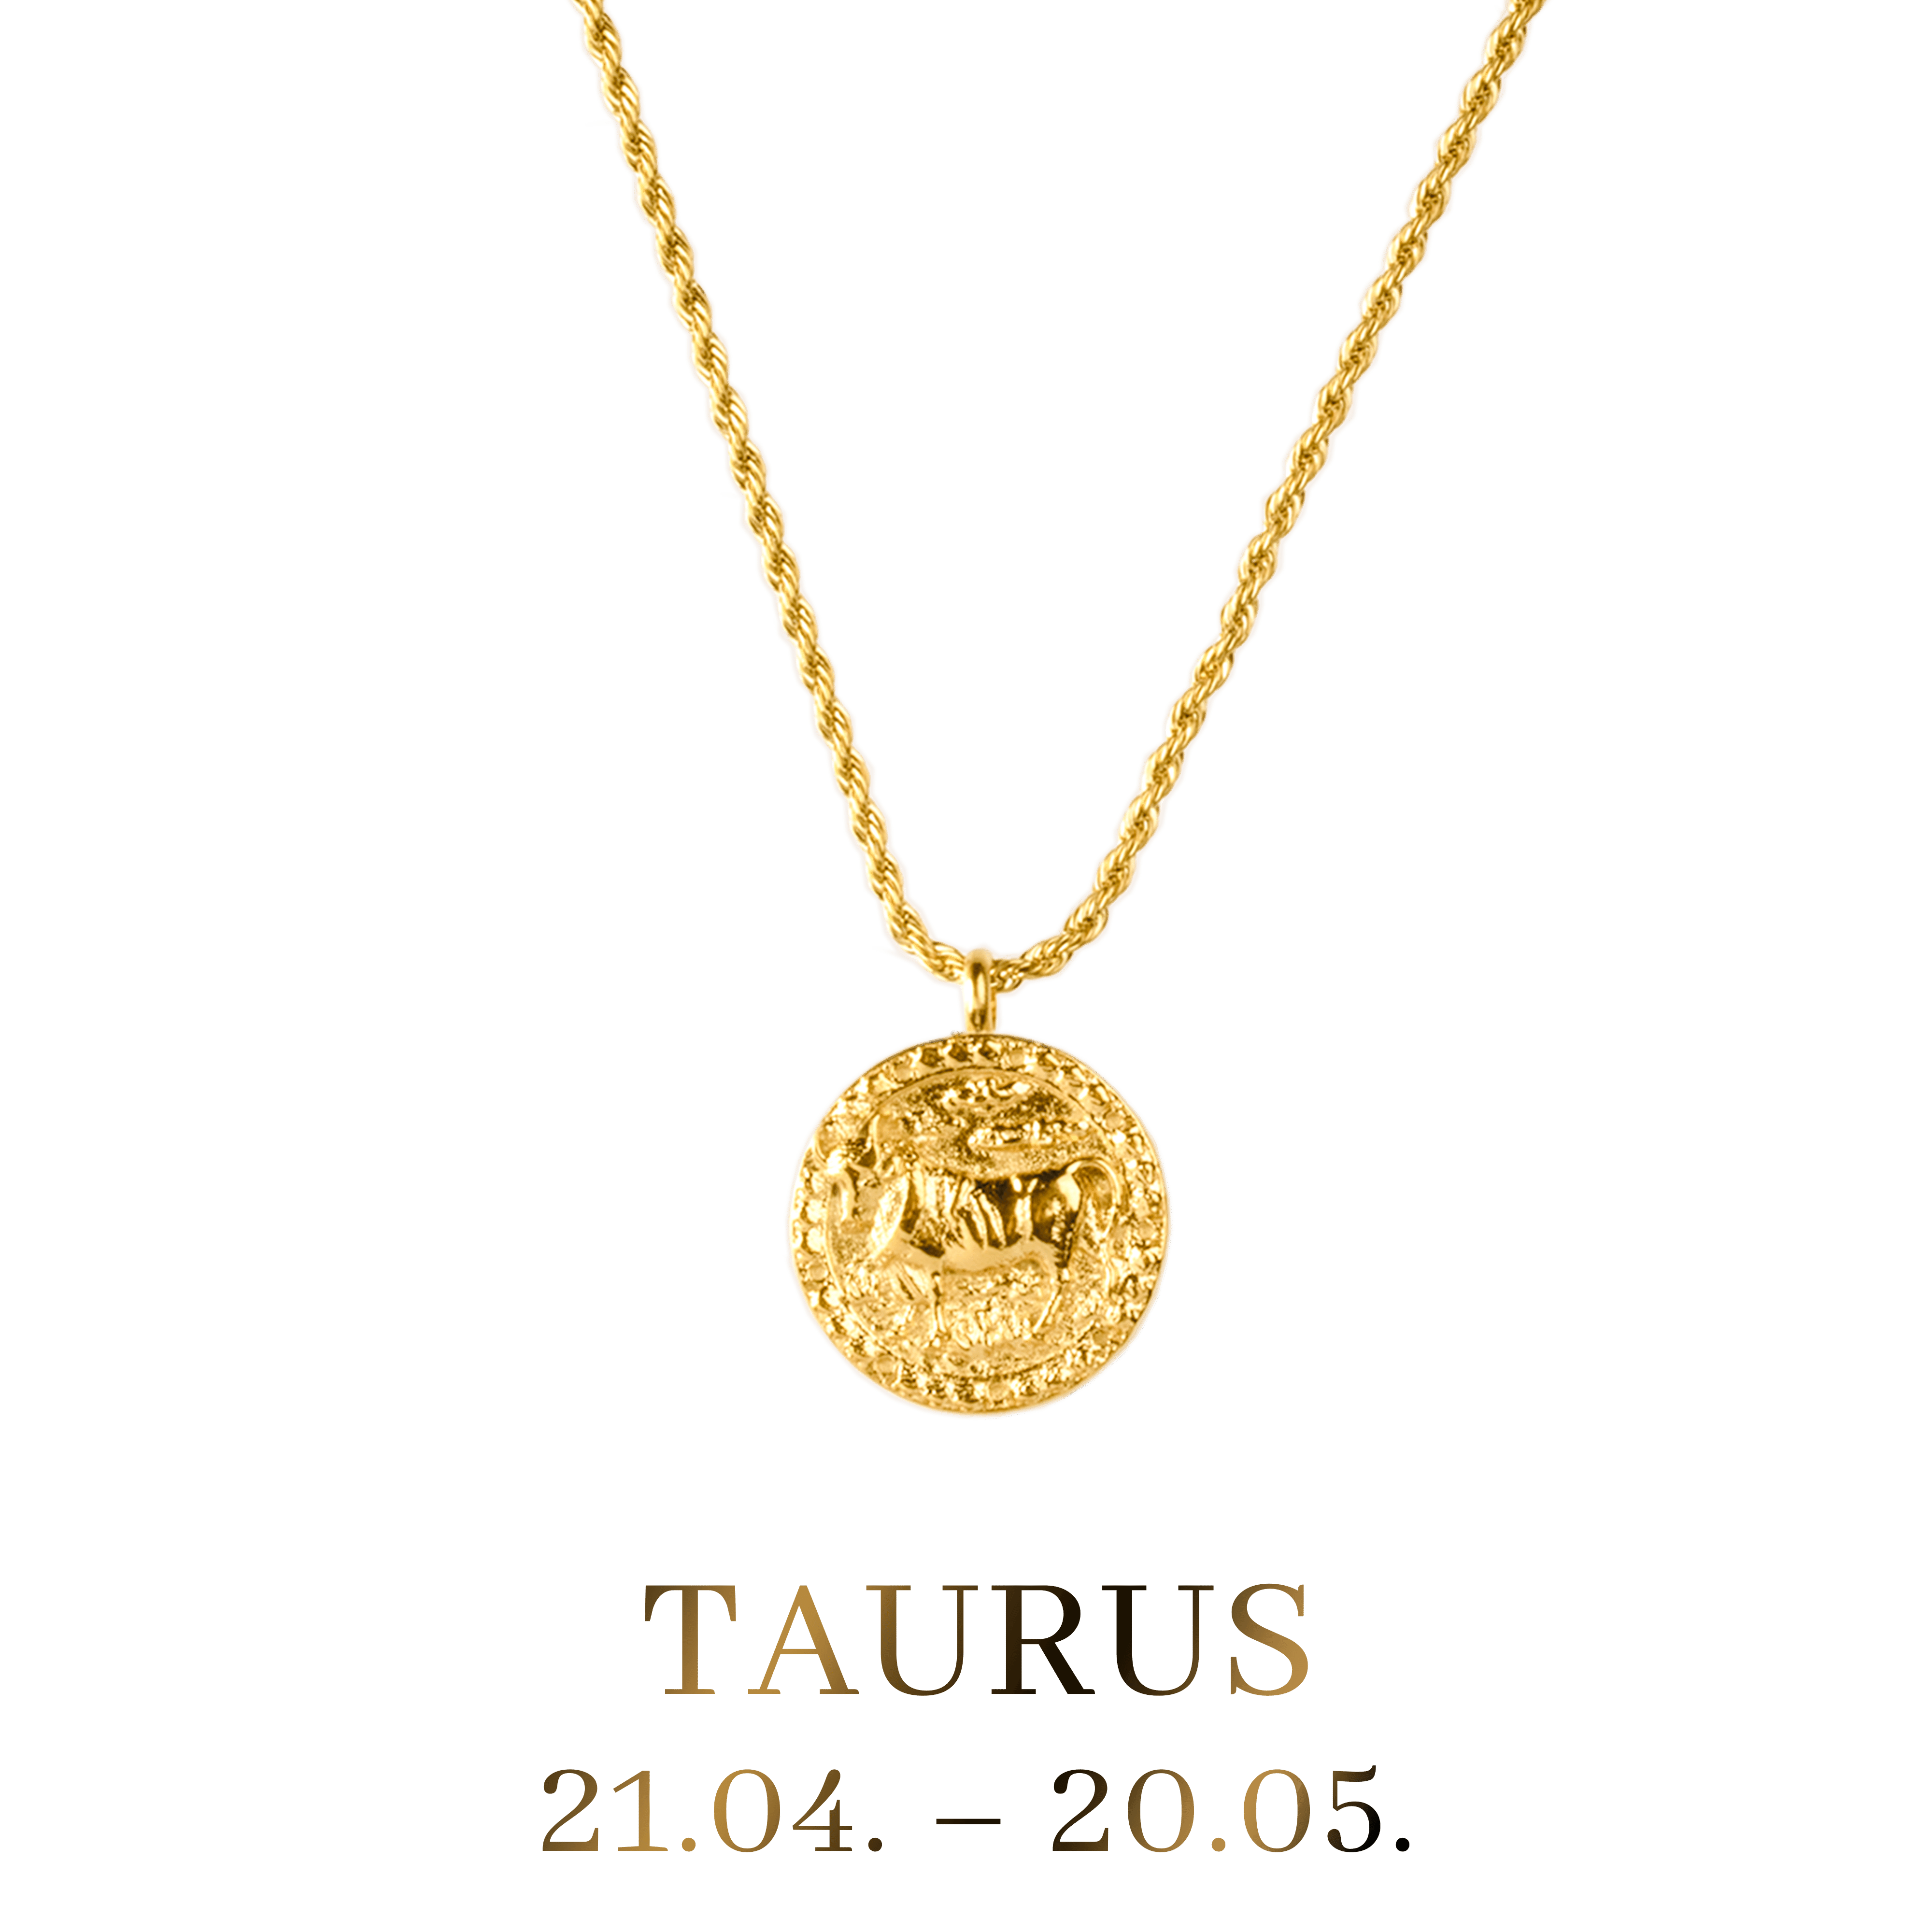 Taurus Zodiac Necklace with Stone Small - StyledU